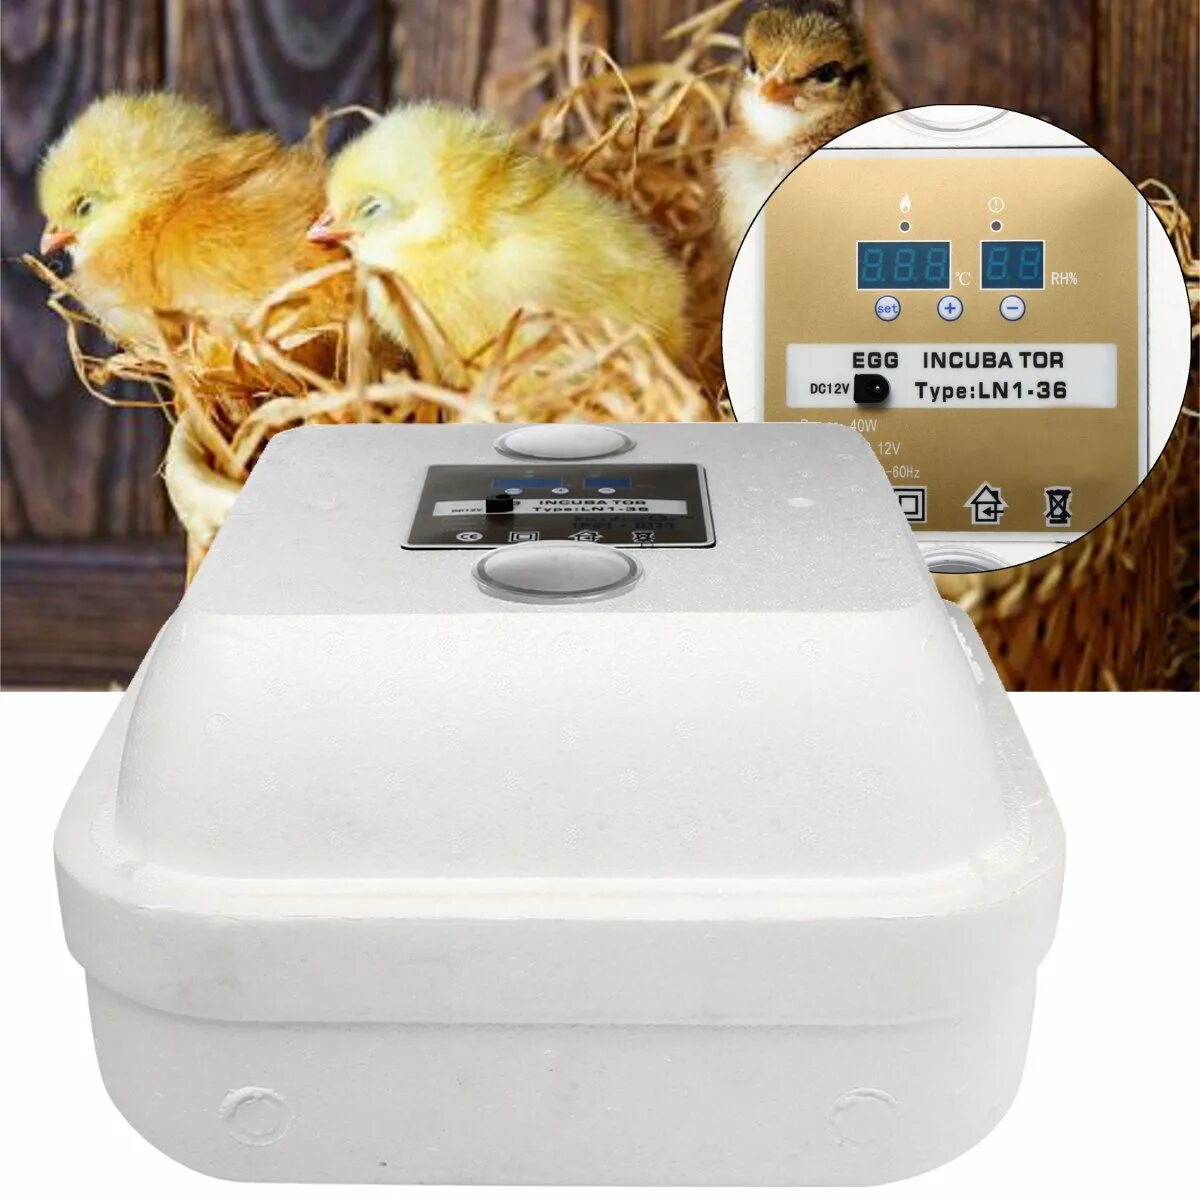 Какой инкубатор автоматический. Инкубатор Egg incubator. Автоматический инкубатор яиц Chicken Hatcher. Инкубатор птичий двор а-64. Dc12v / ac220v инкубатор для курицы.